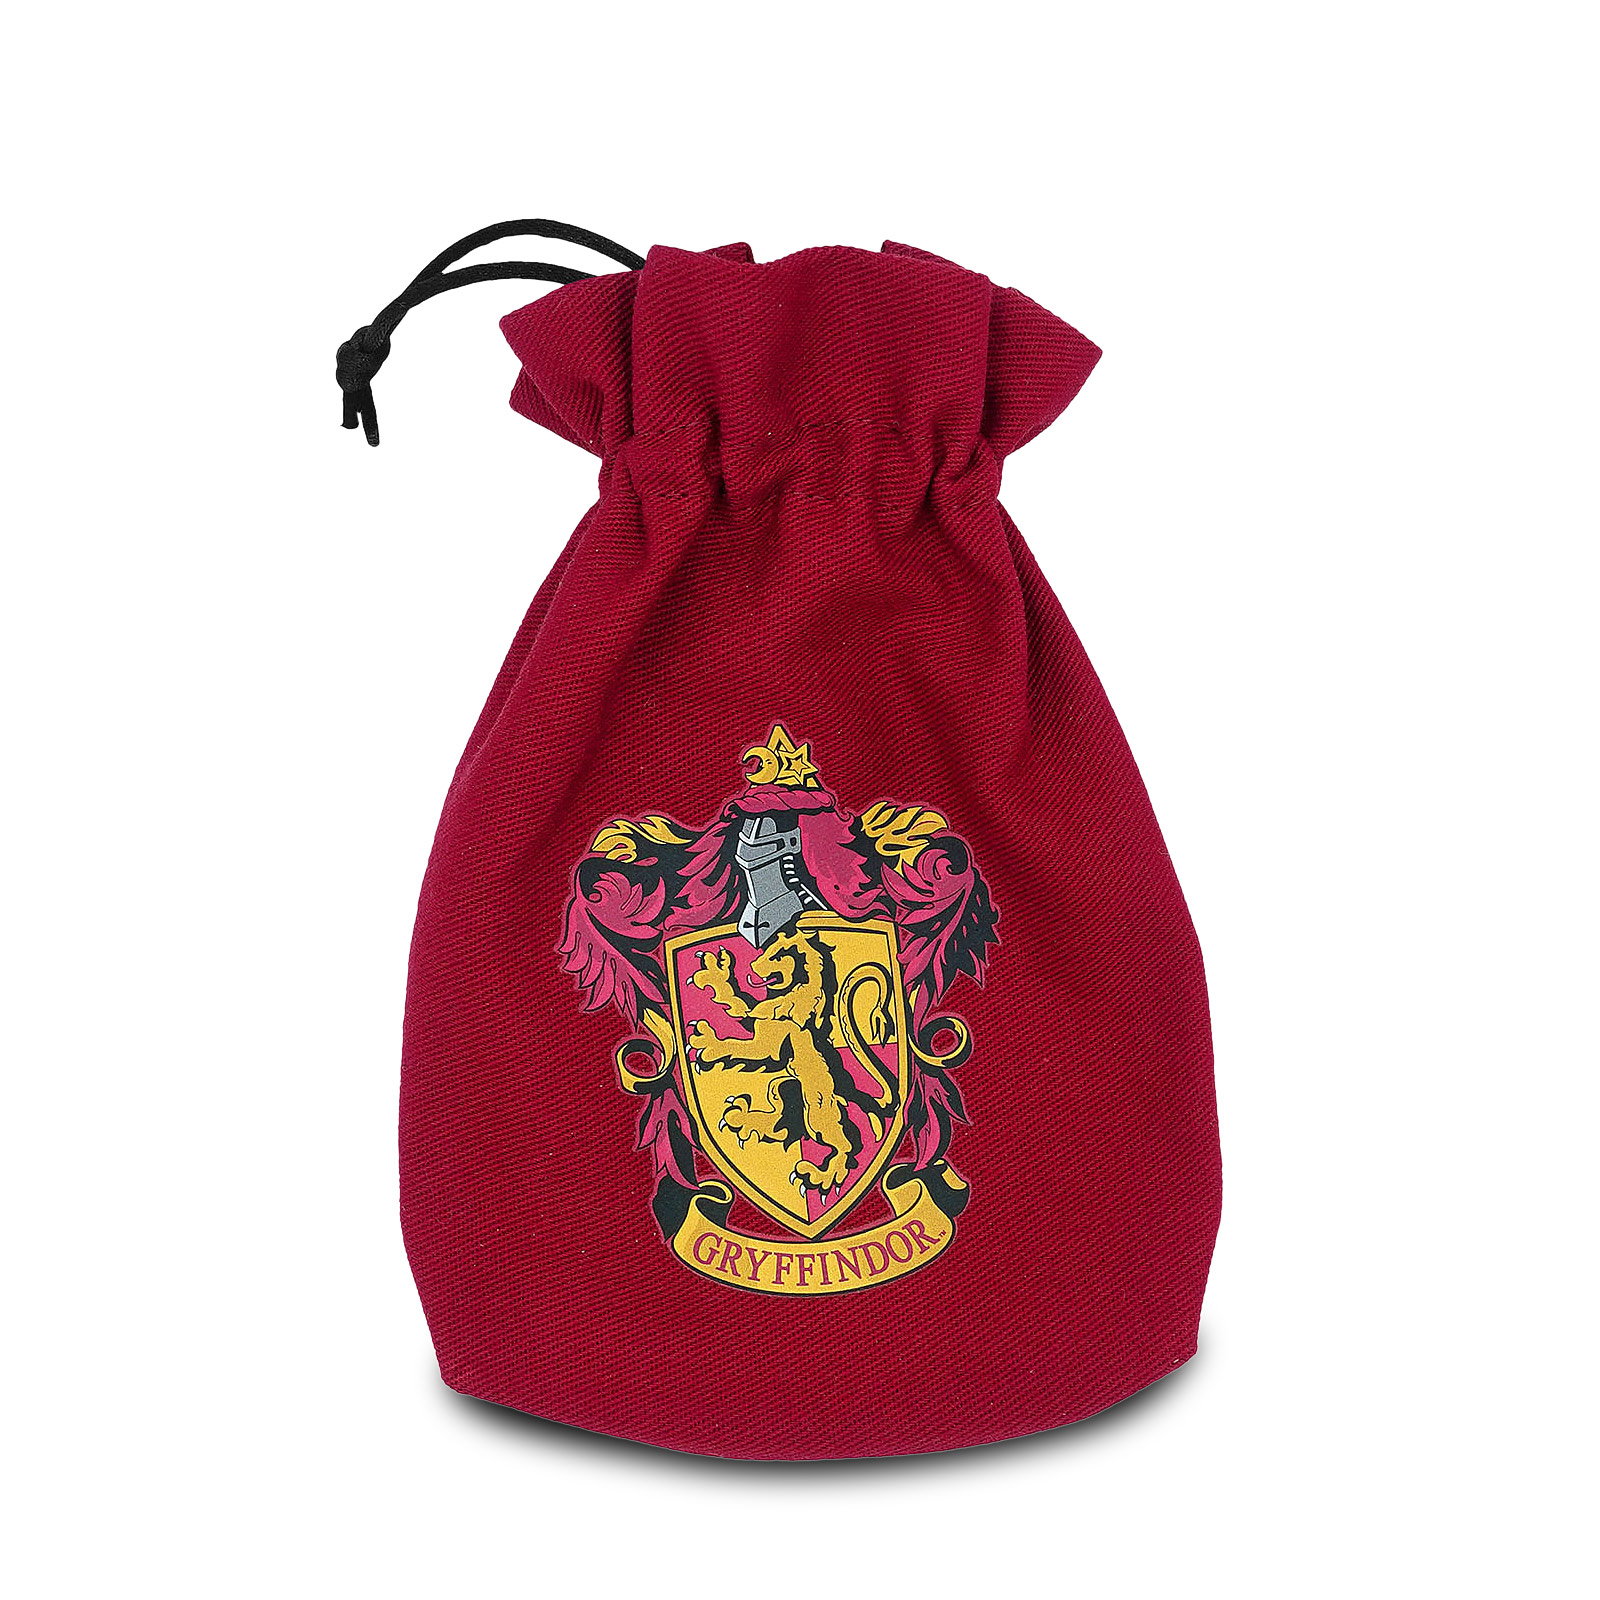 Harry Potter - Gryffindor RPG Dobbelstenen Set 5-delig met Dobbelstenenzakje Rood